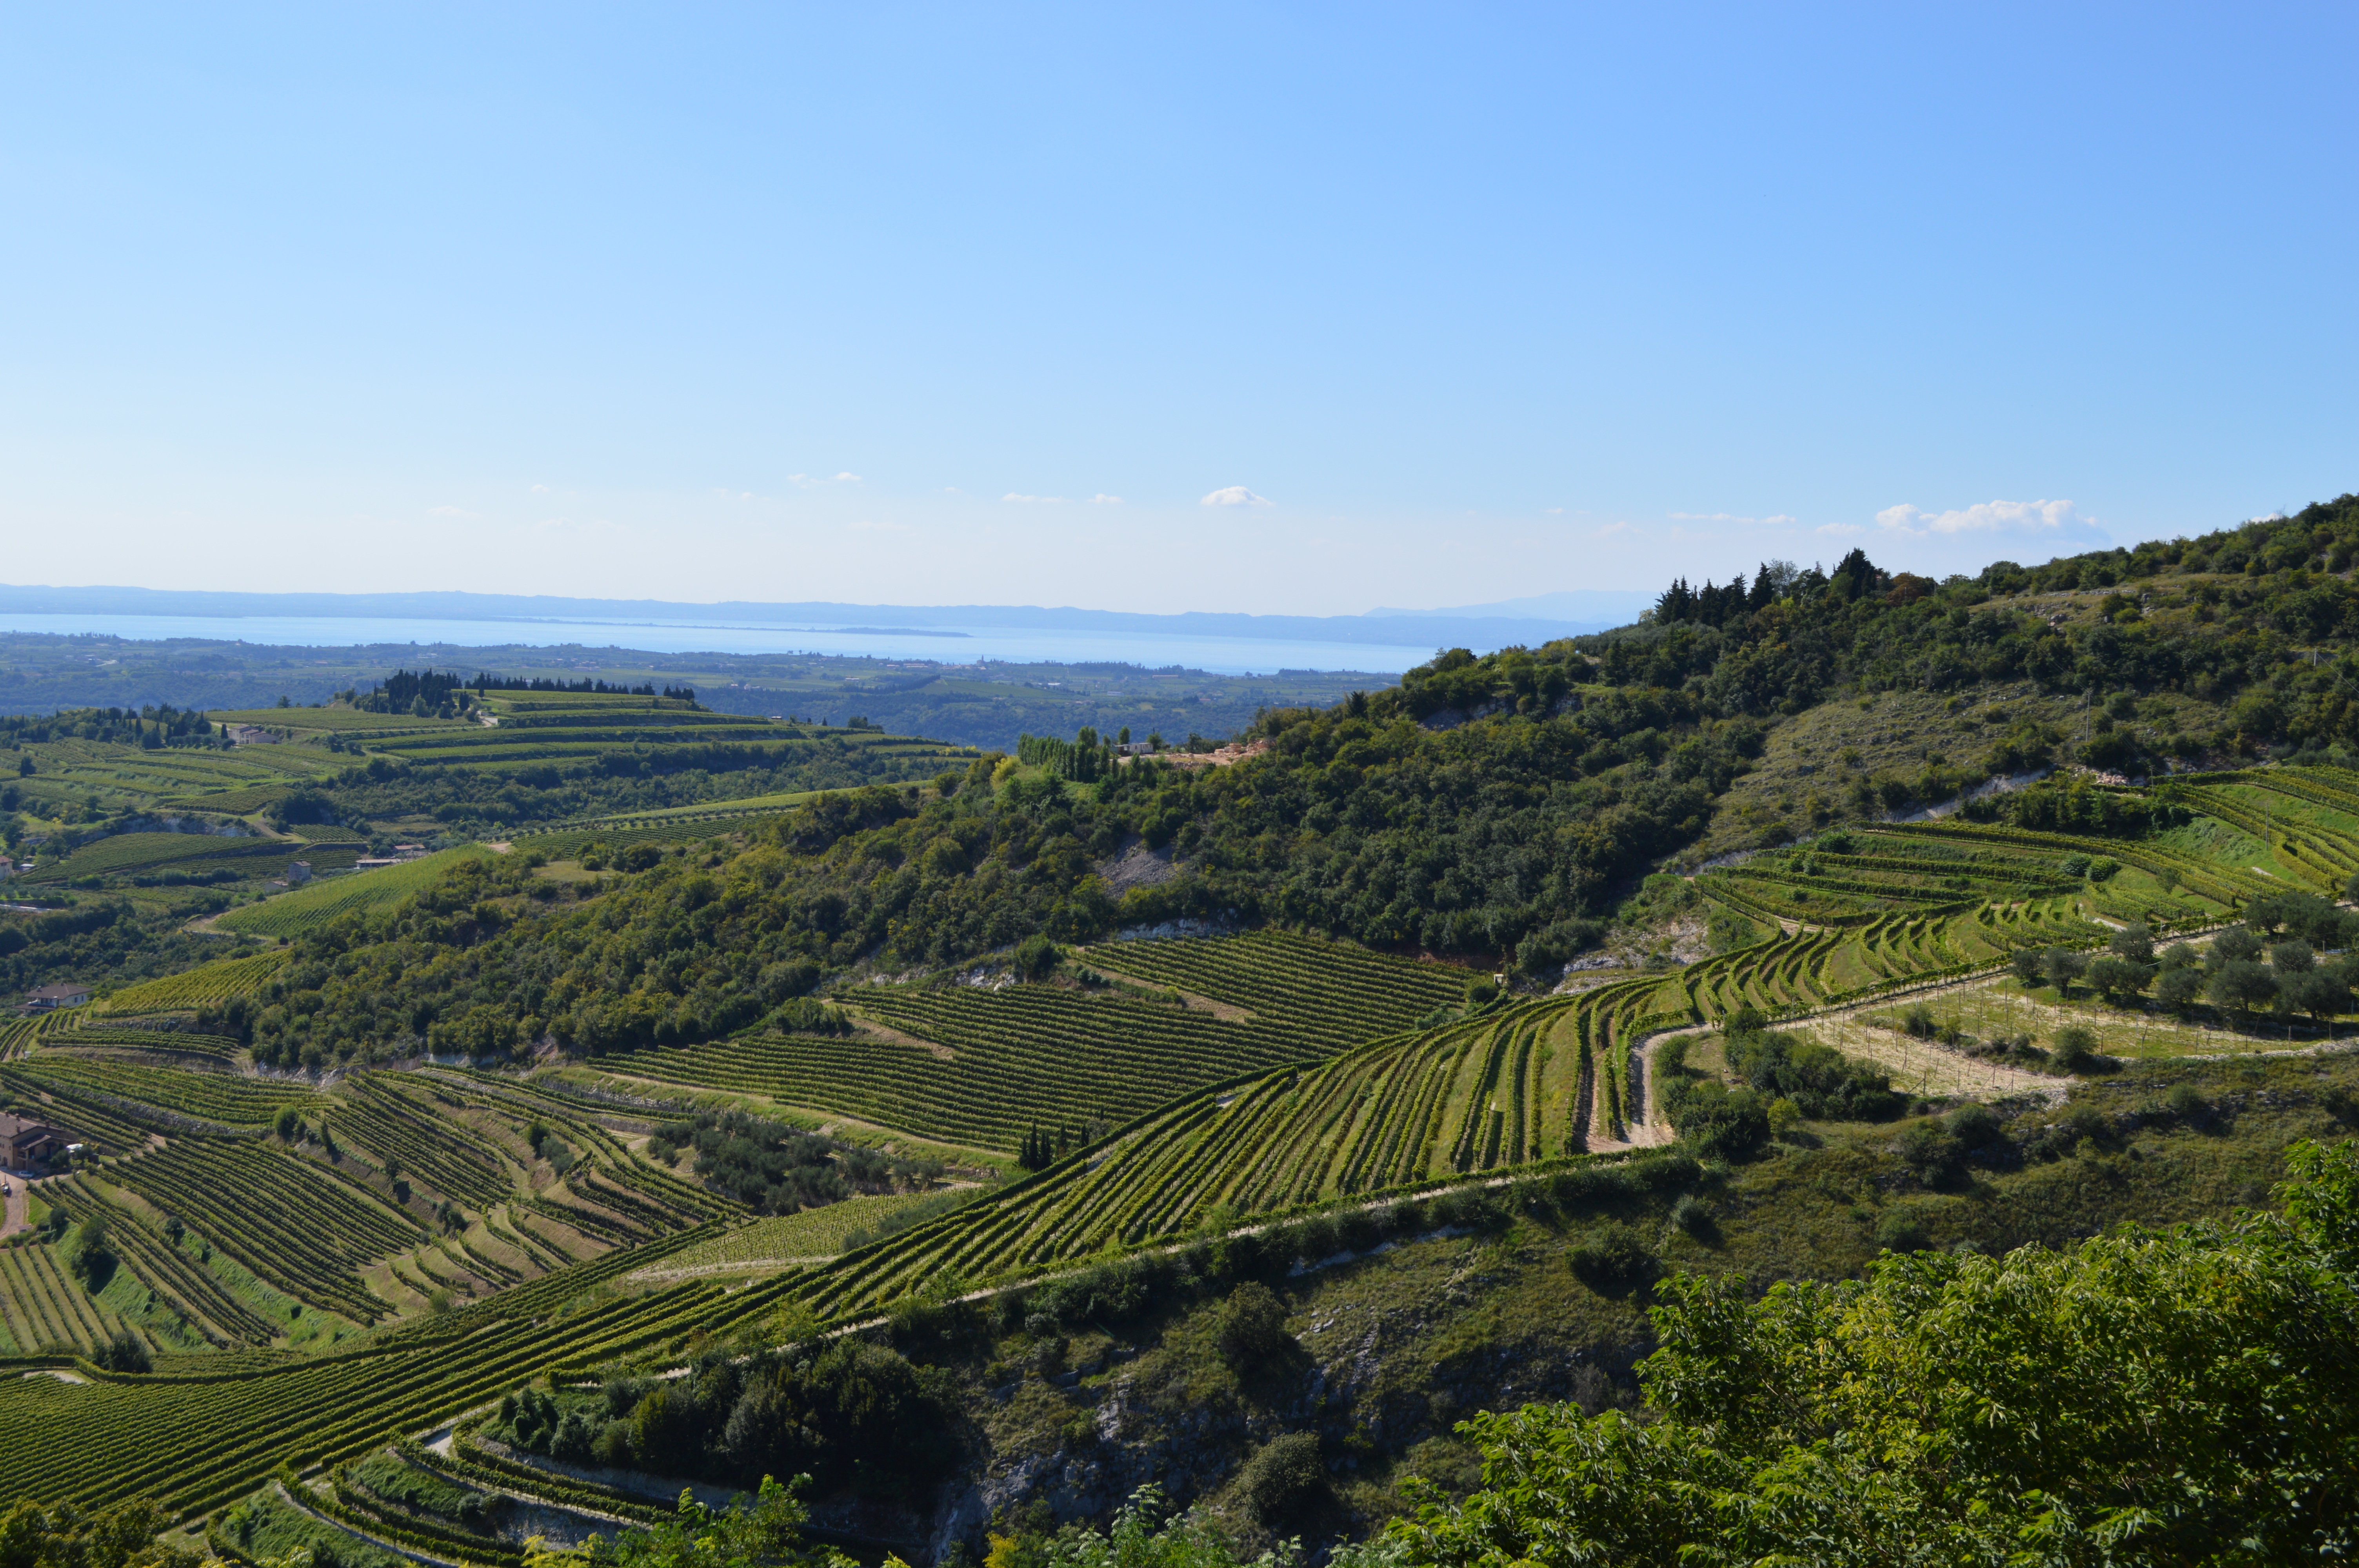 A view of Valpolicella vineyards and Lake Garda